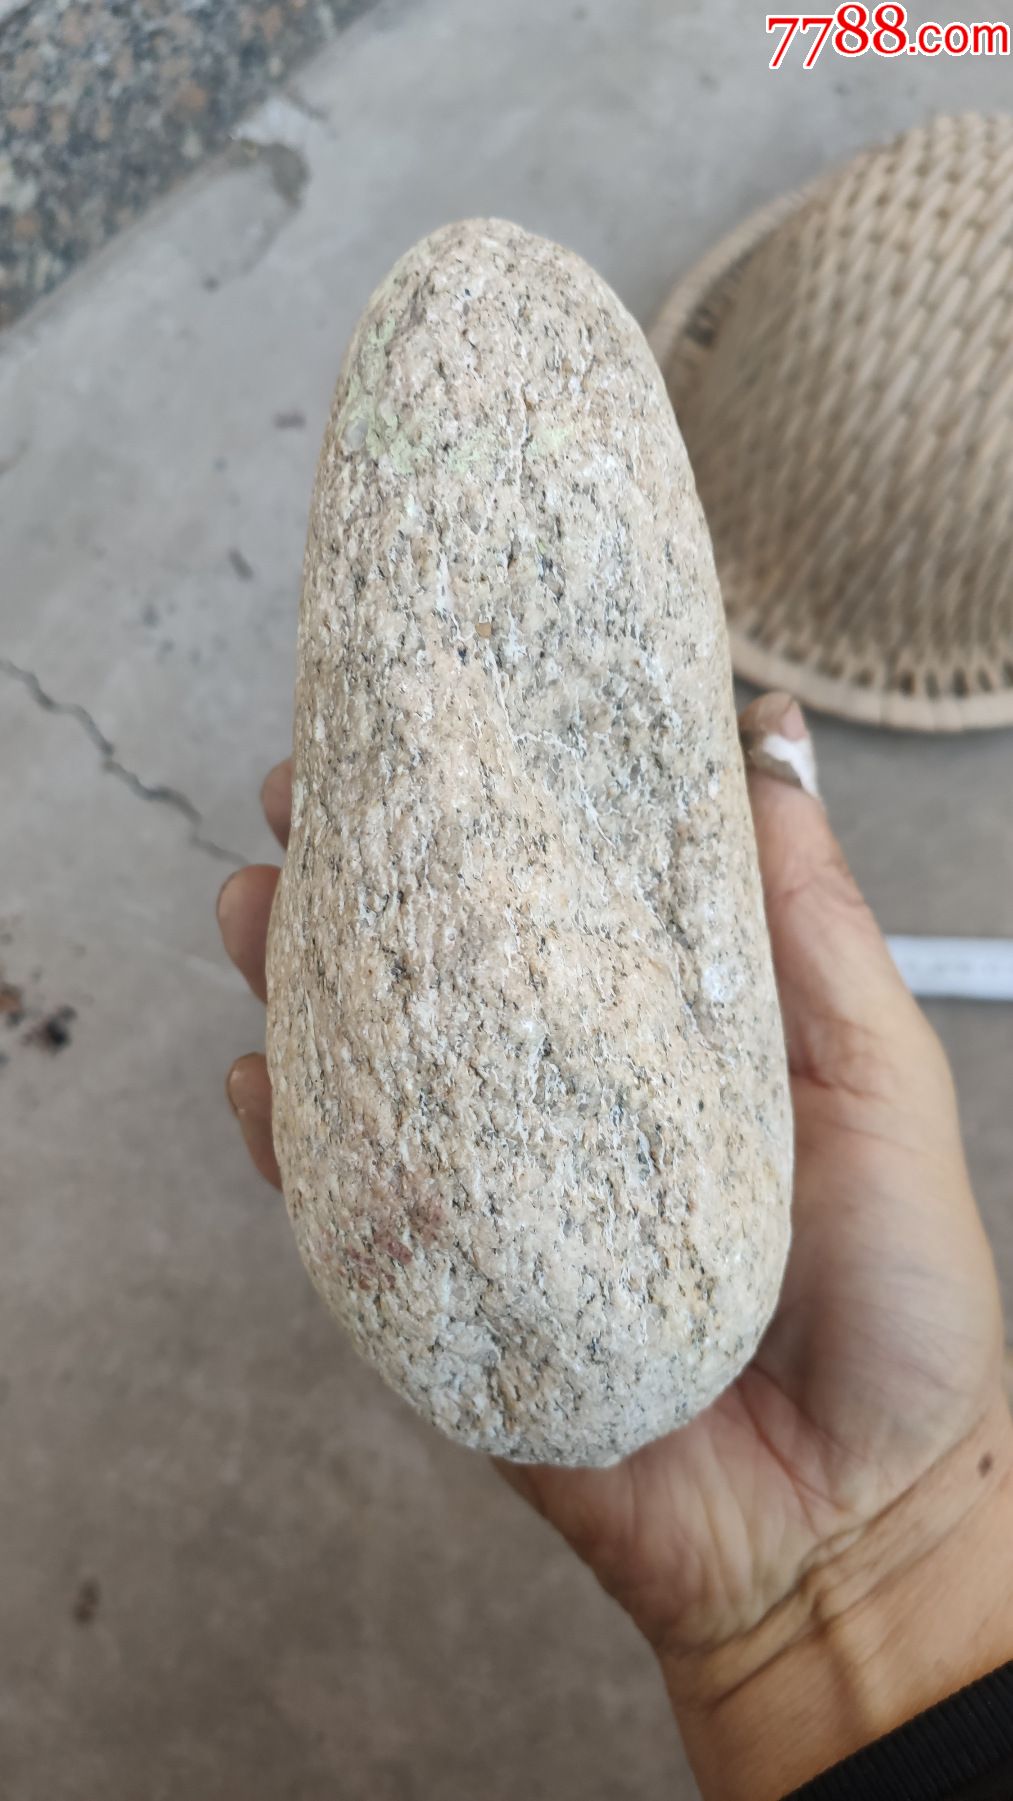 奇石夜光石荧光石原石一块19厘米11厘米6厘米重480市斤绿光